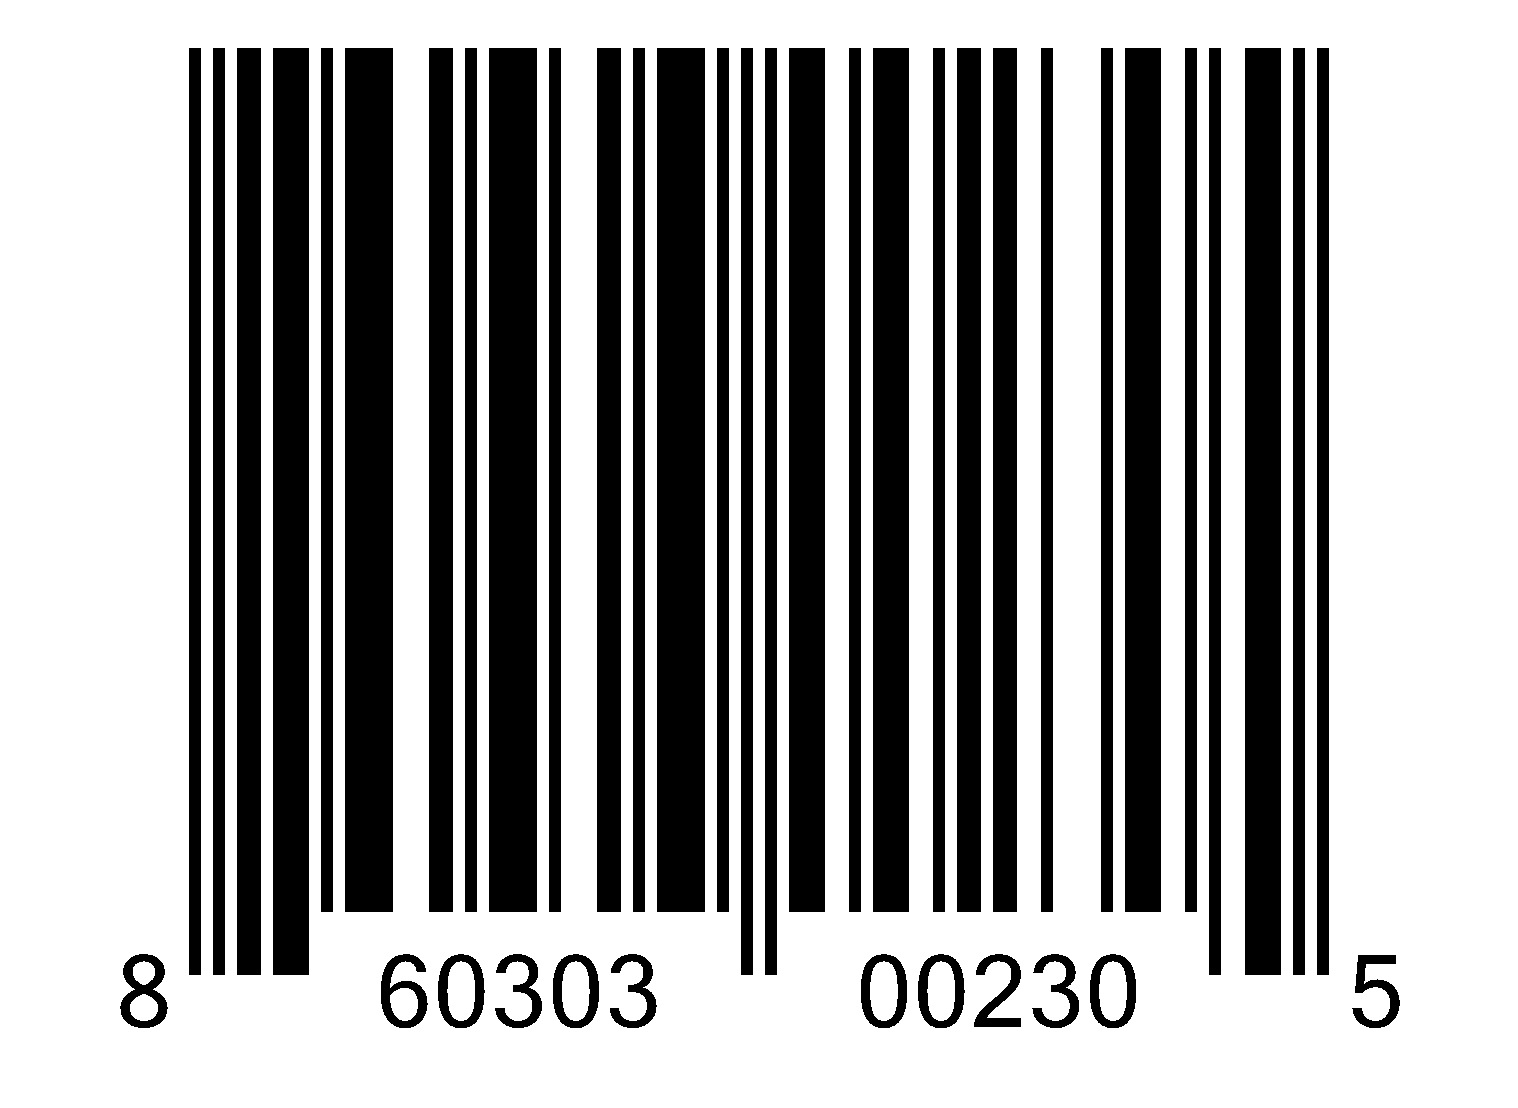 barcode png transparent